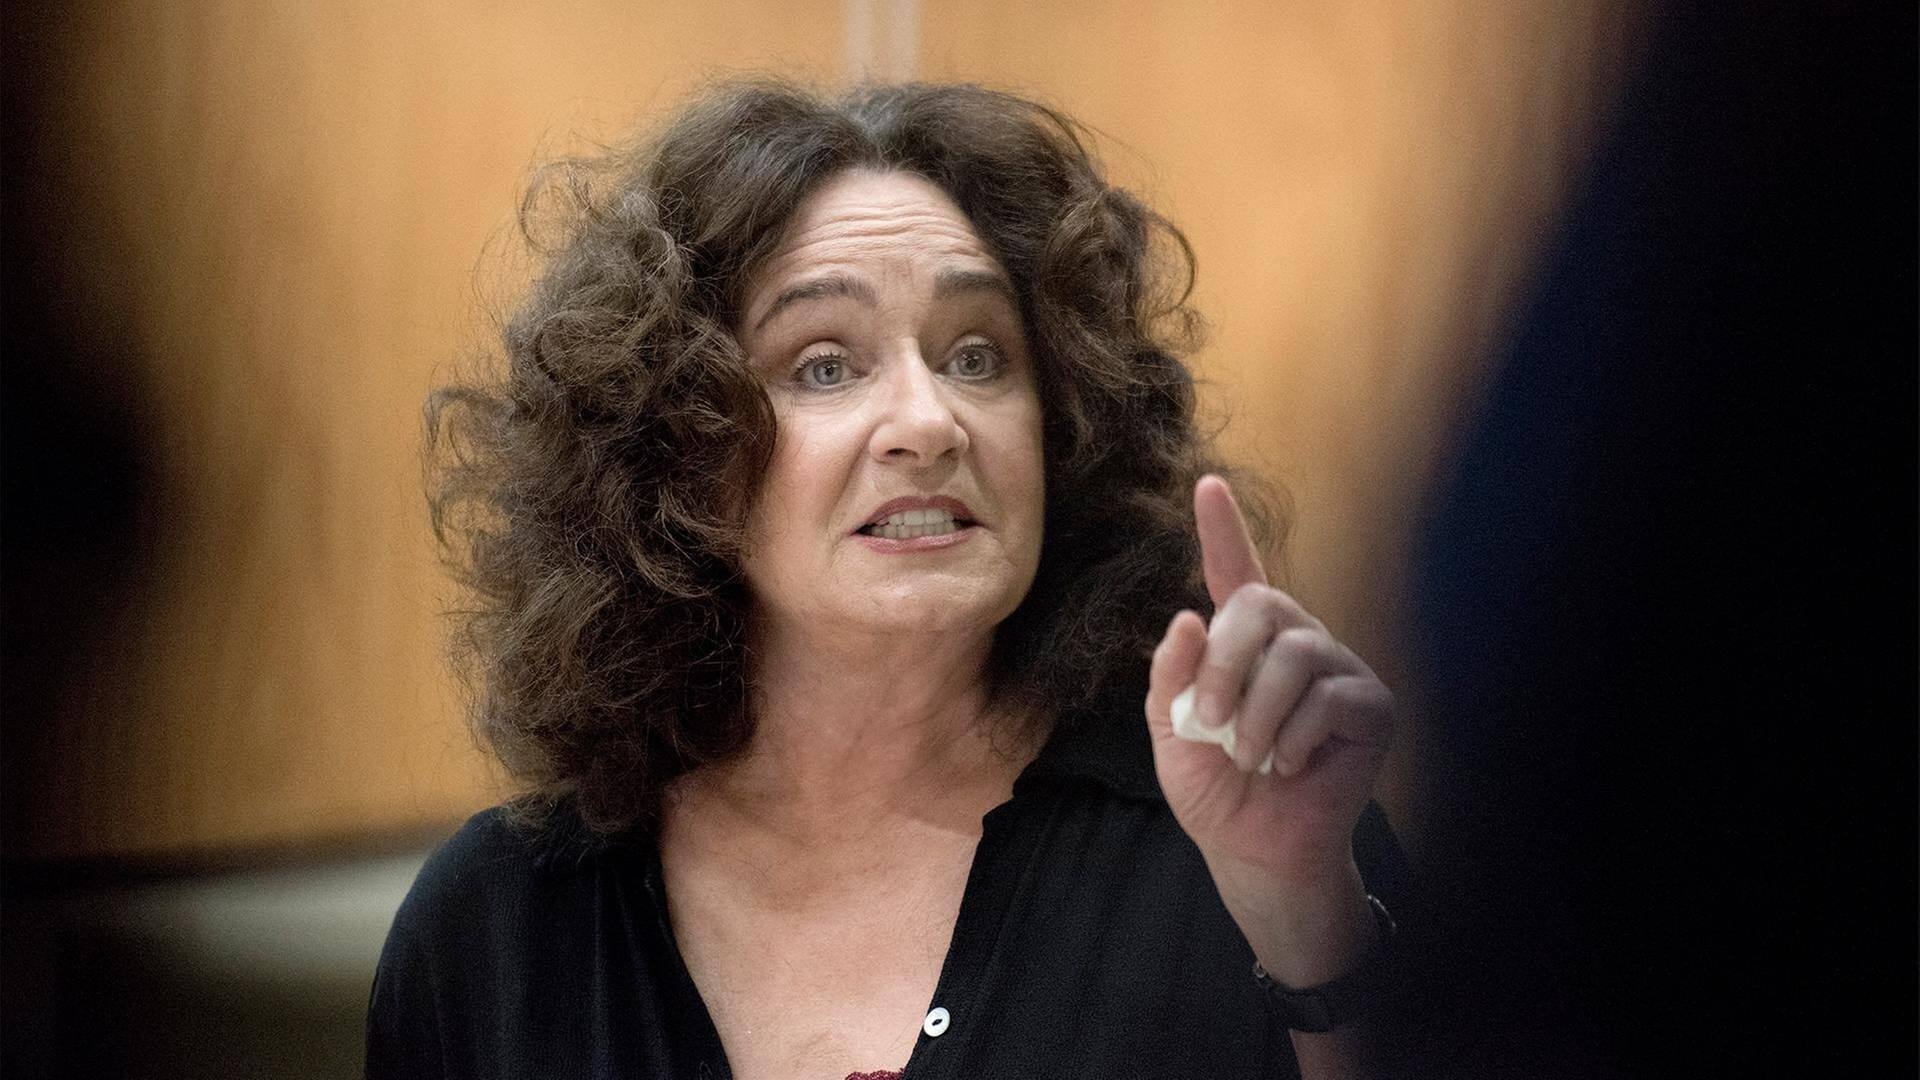 Staatsanwältin Wilhelmine Klemm (Mechthild Großmann) warnt vor voreiligen Schlüssen bei den Ermittlungen. (Foto: WDR/Martin Menke)